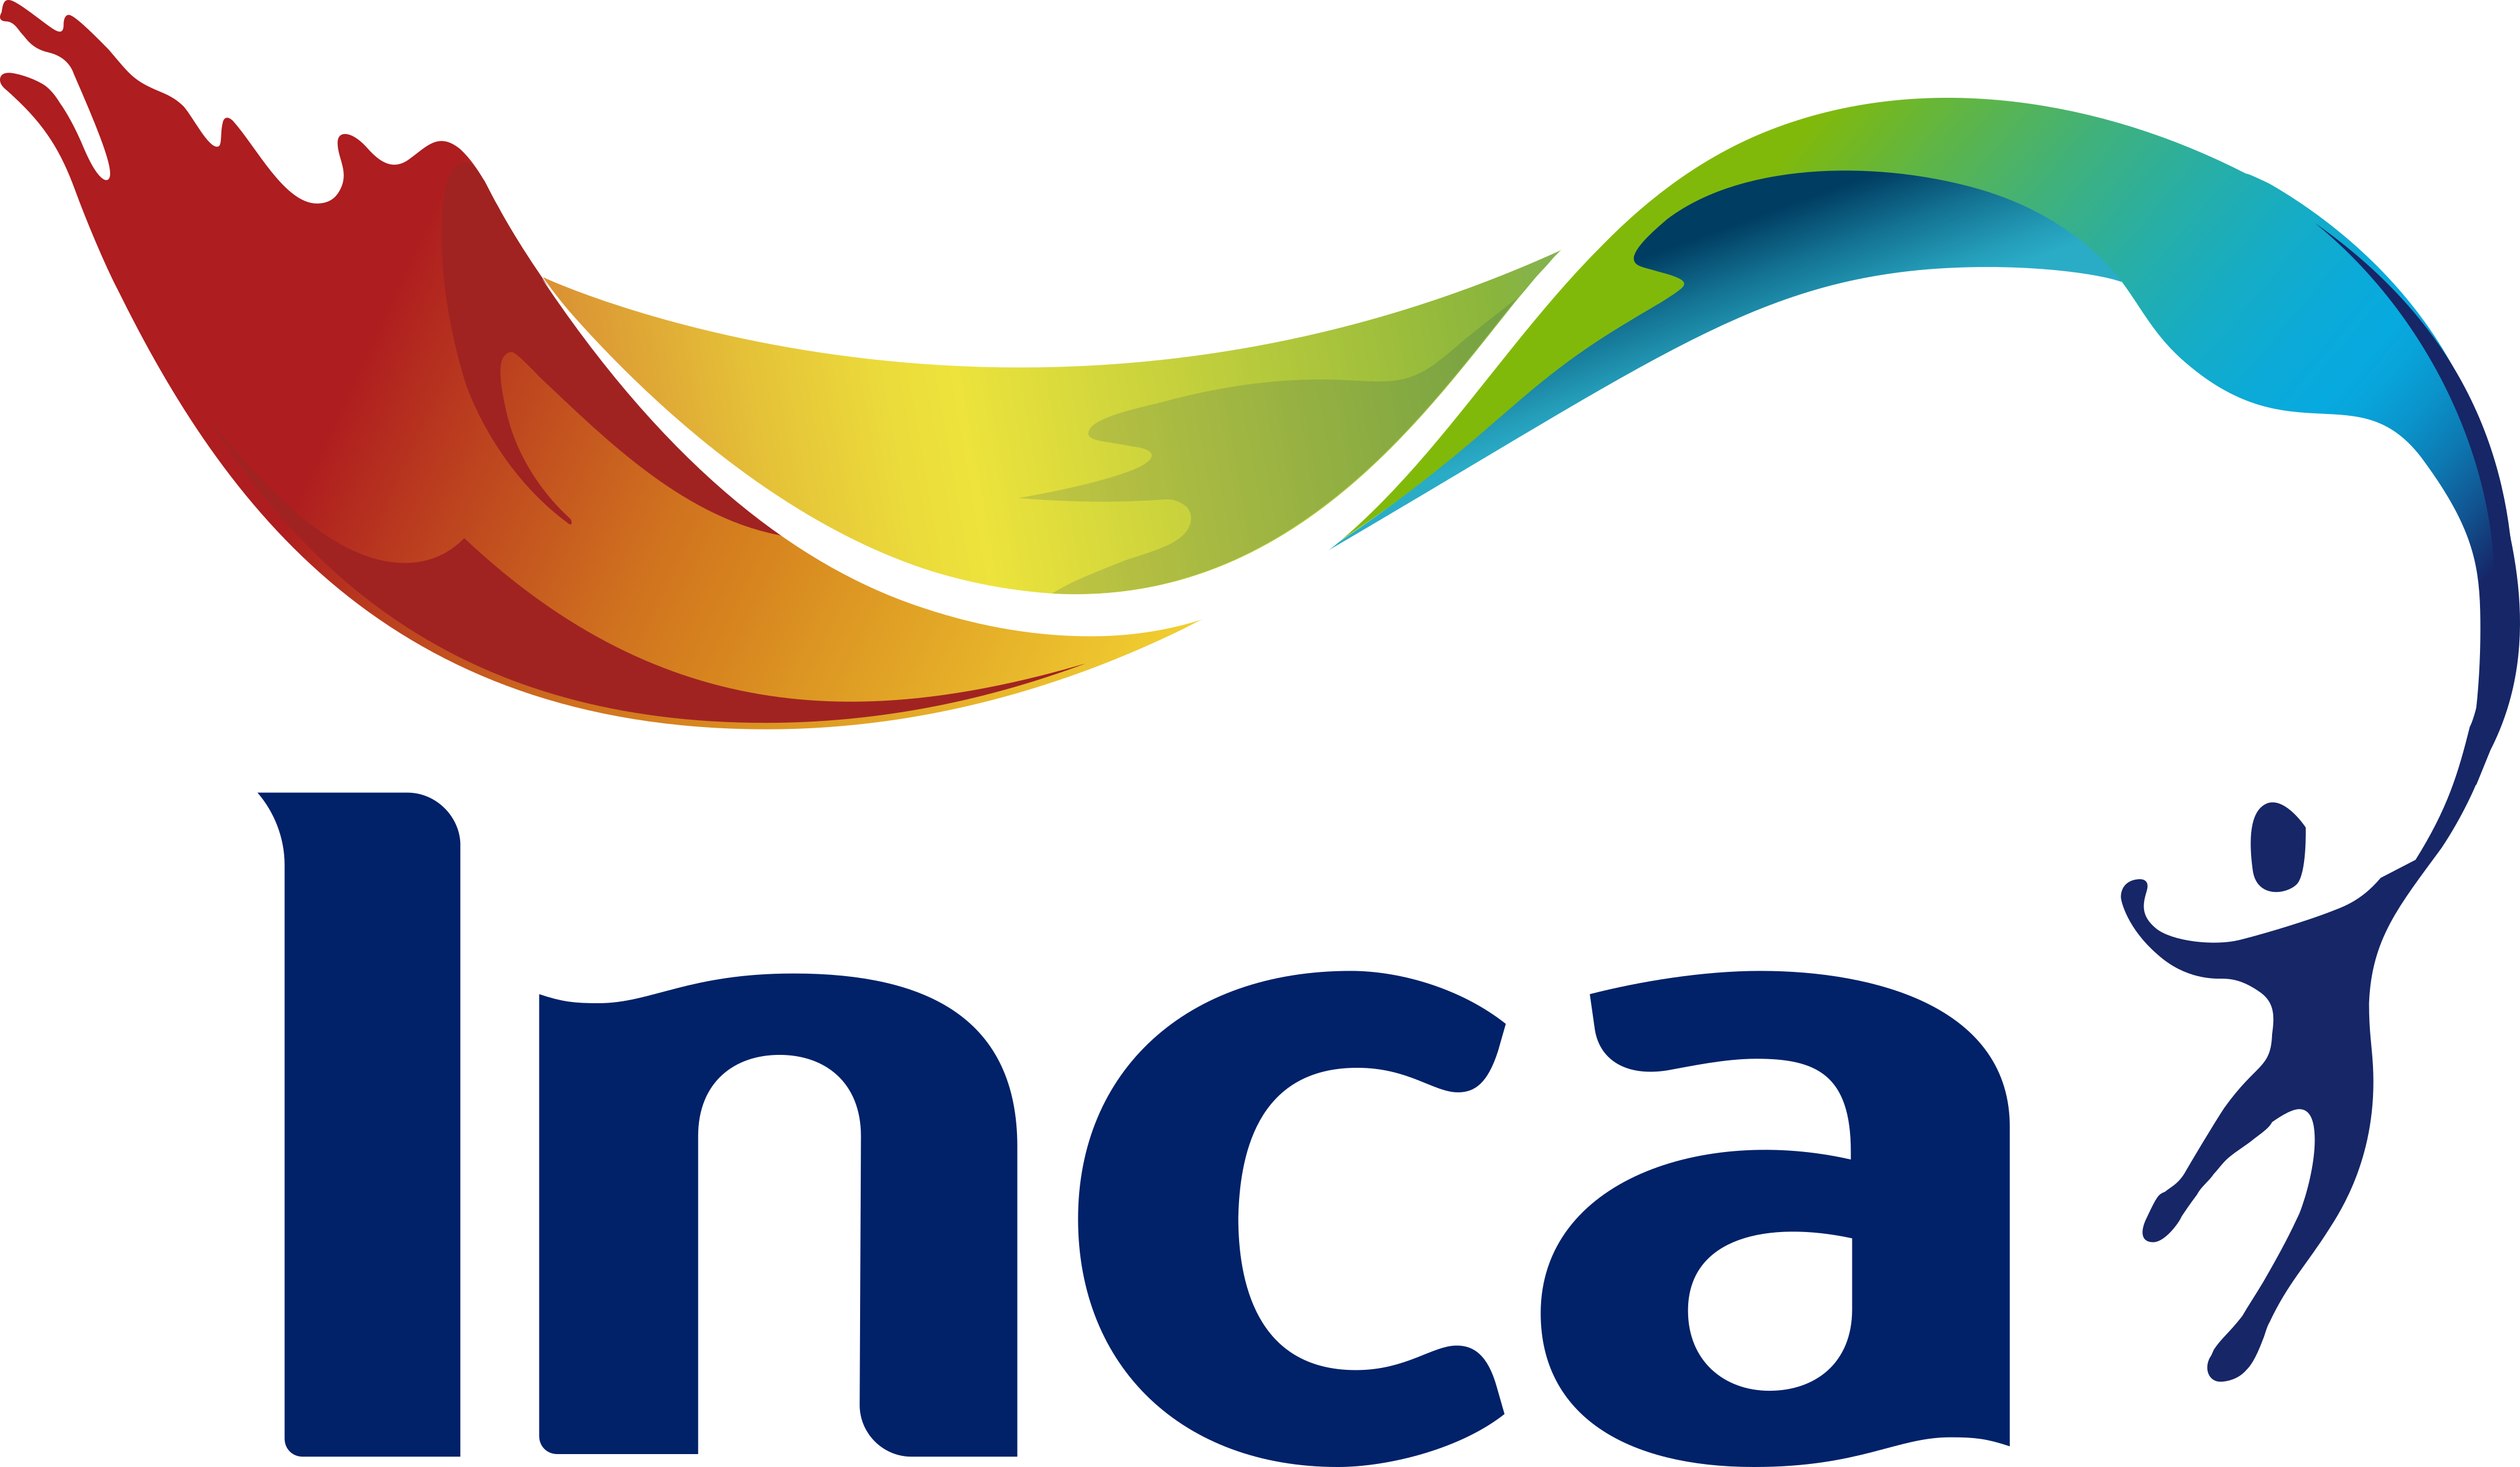 inca pinturas logo - INCA Pinturas Logo